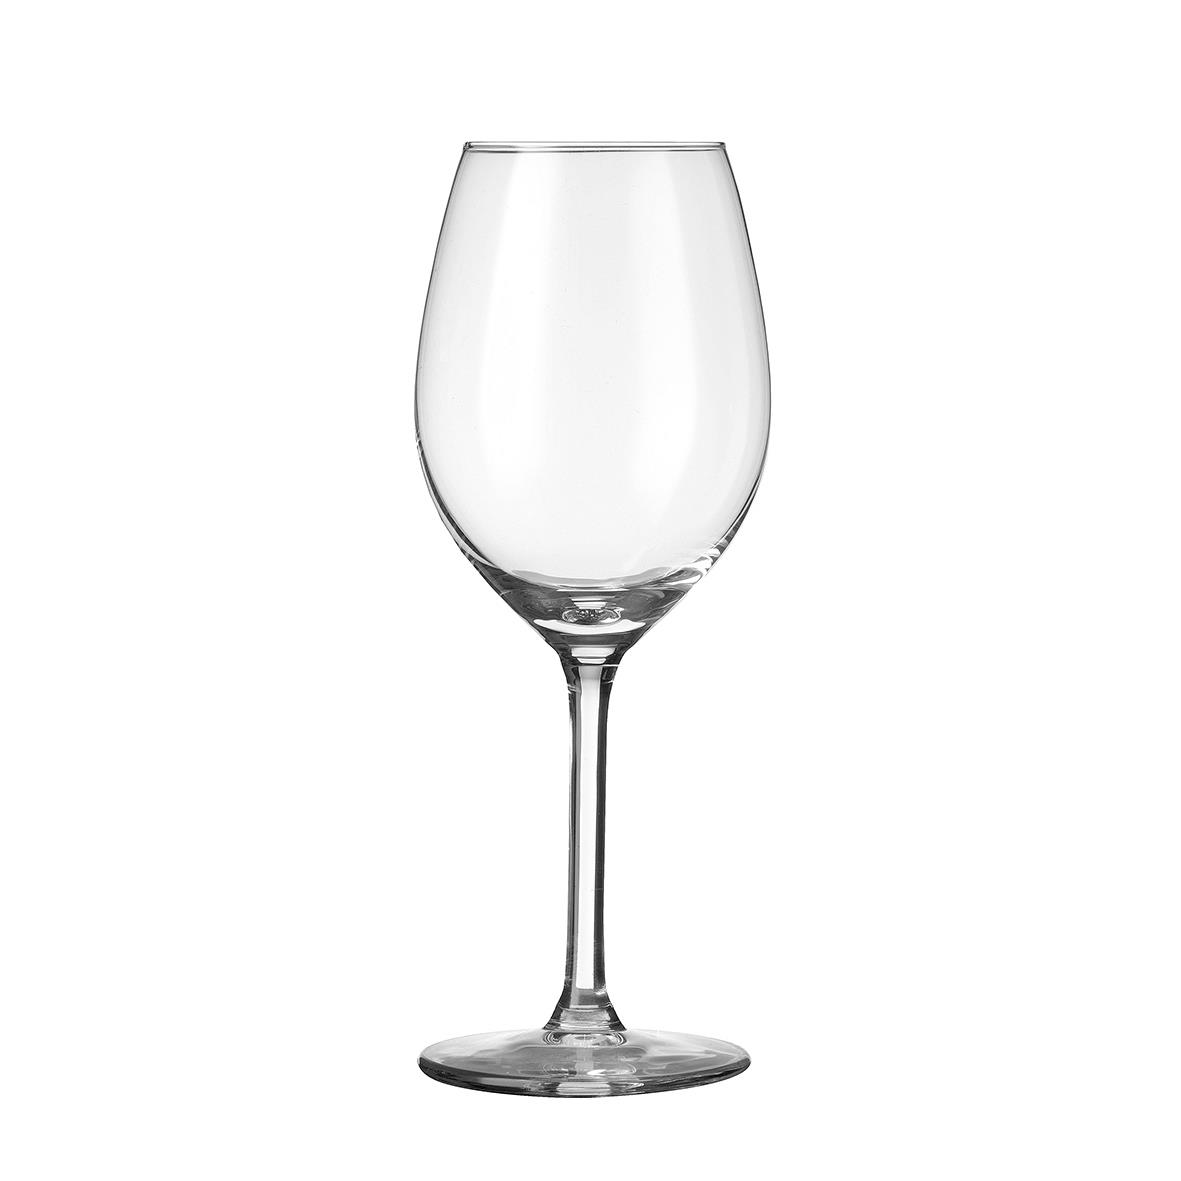 Esprit Weinglas mit einem Fassungsvermögen von 32 cl wird bedruckt oder graviert